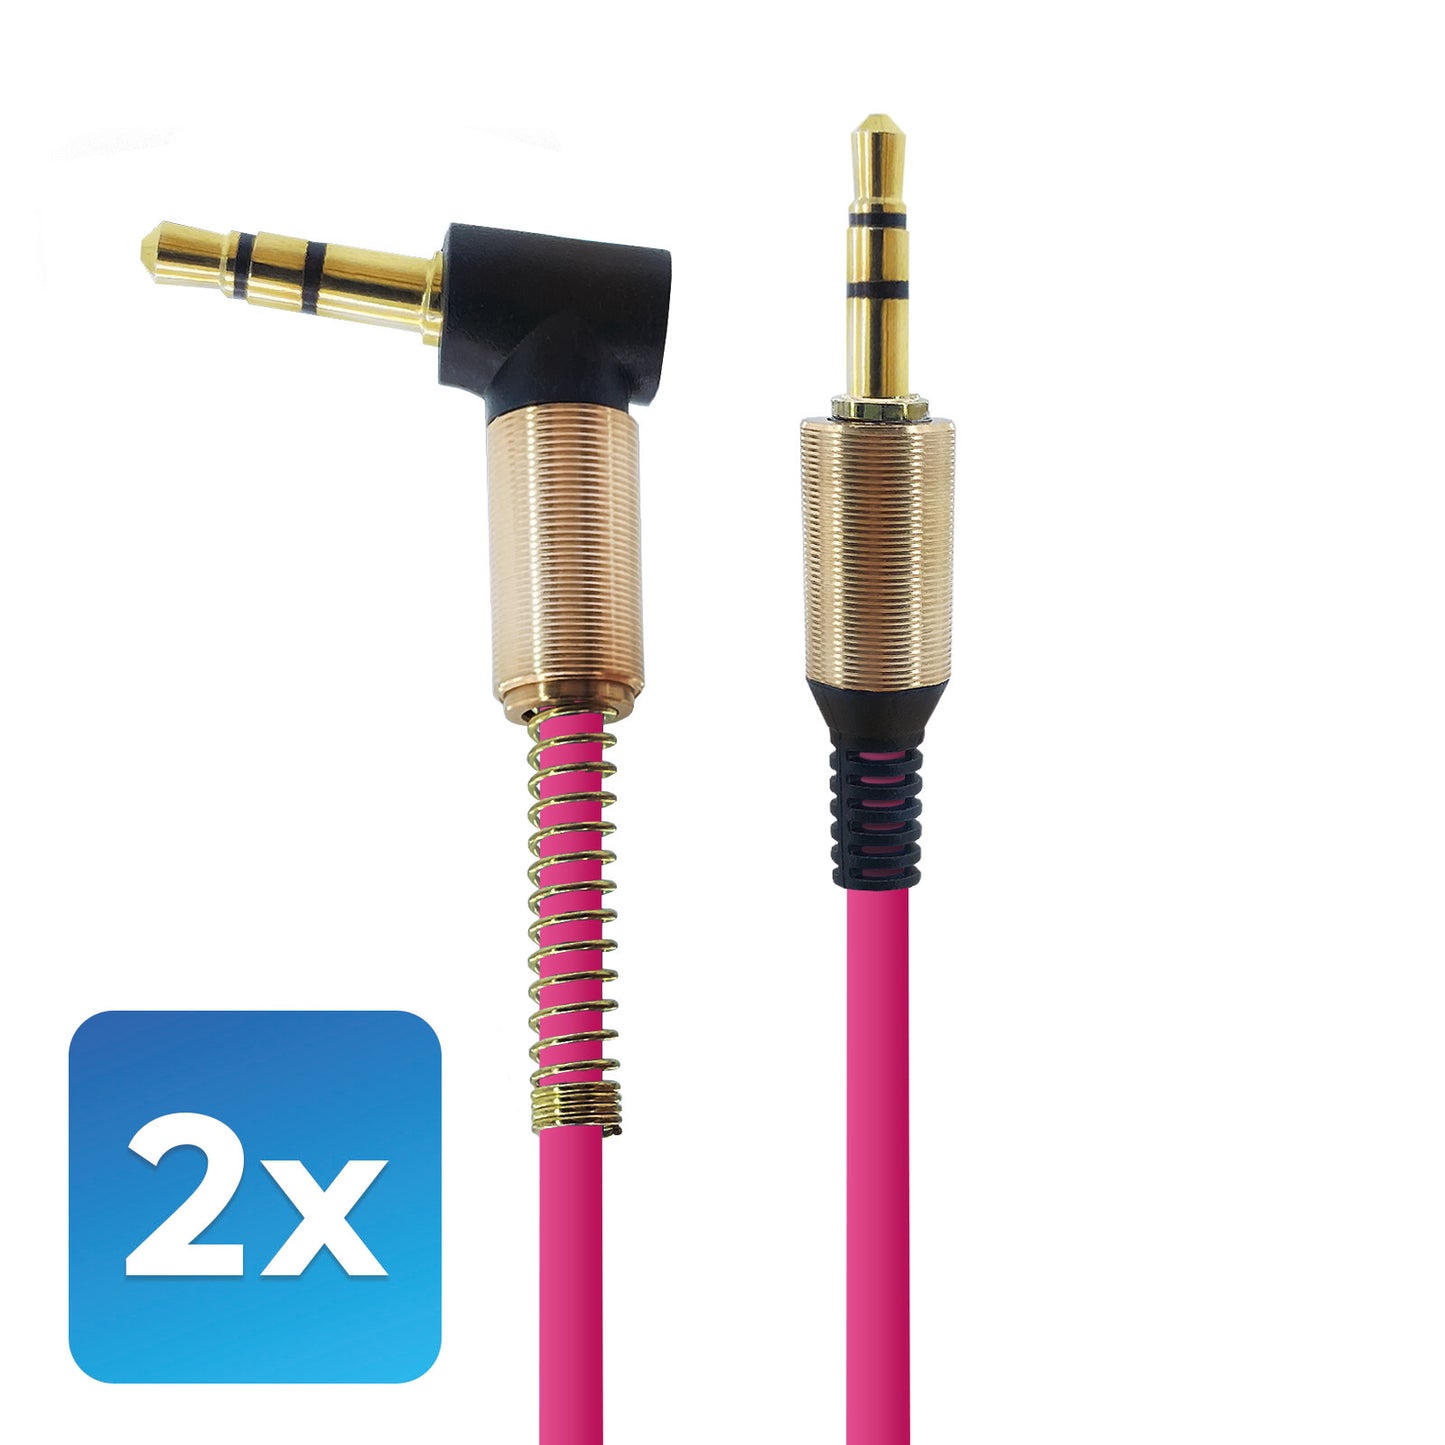 Audio-Adapter 3,5mm zu 3,5mm Stecker Pink mit 1 Meter Kabellänge. Stereo Audio-Adapter optimal für, Verstärker, Musikbox, AUX- Audioeingang im Auto.